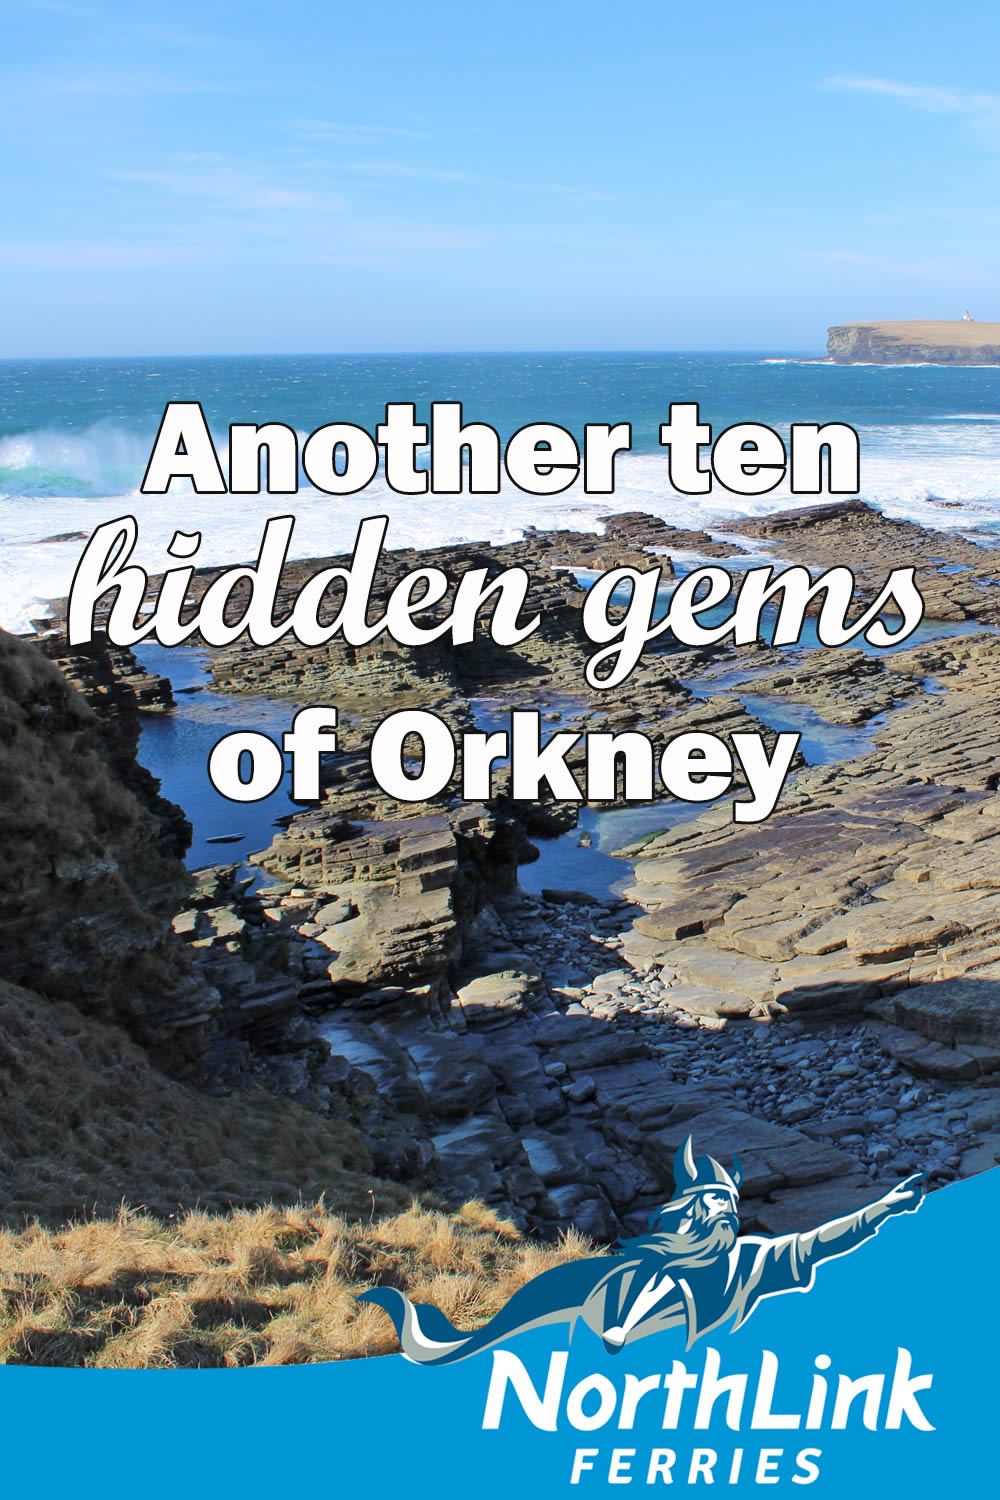 Another ten hidden gems of Orkney